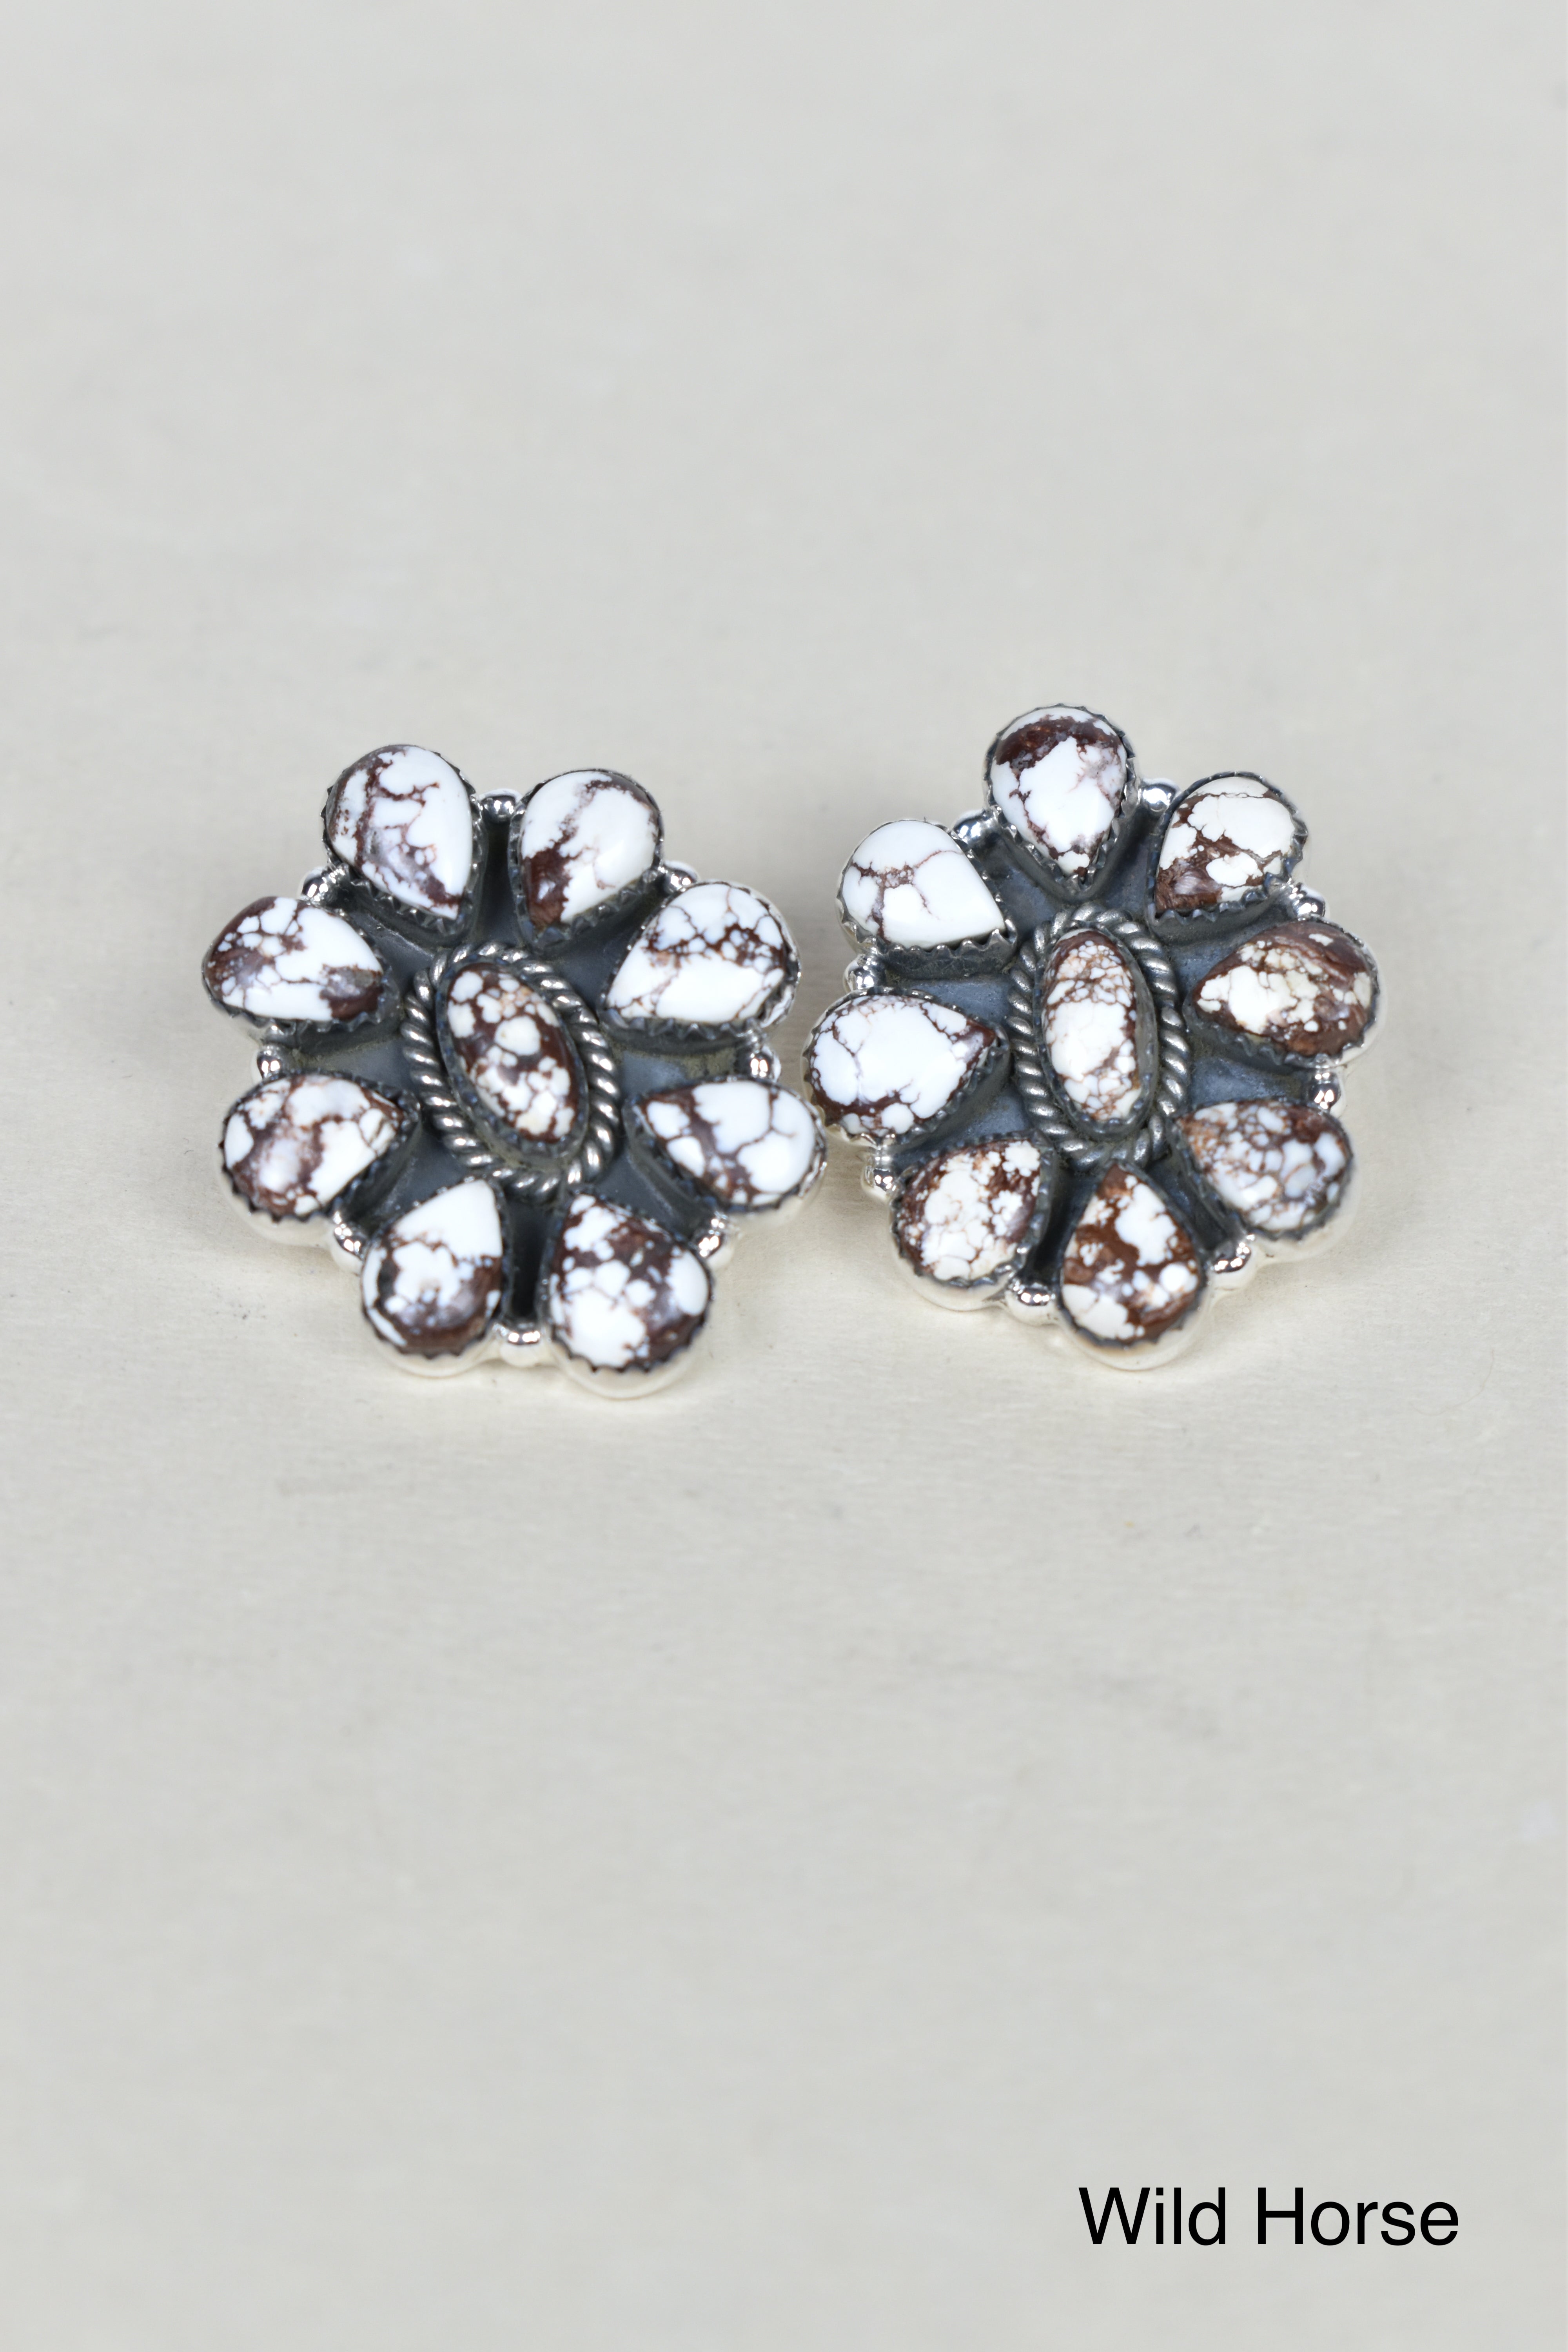 Stone Blossom Sterling Silver Earrings-Earrings-Krush Kandy, Women's Online Fashion Boutique Located in Phoenix, Arizona (Scottsdale Area)